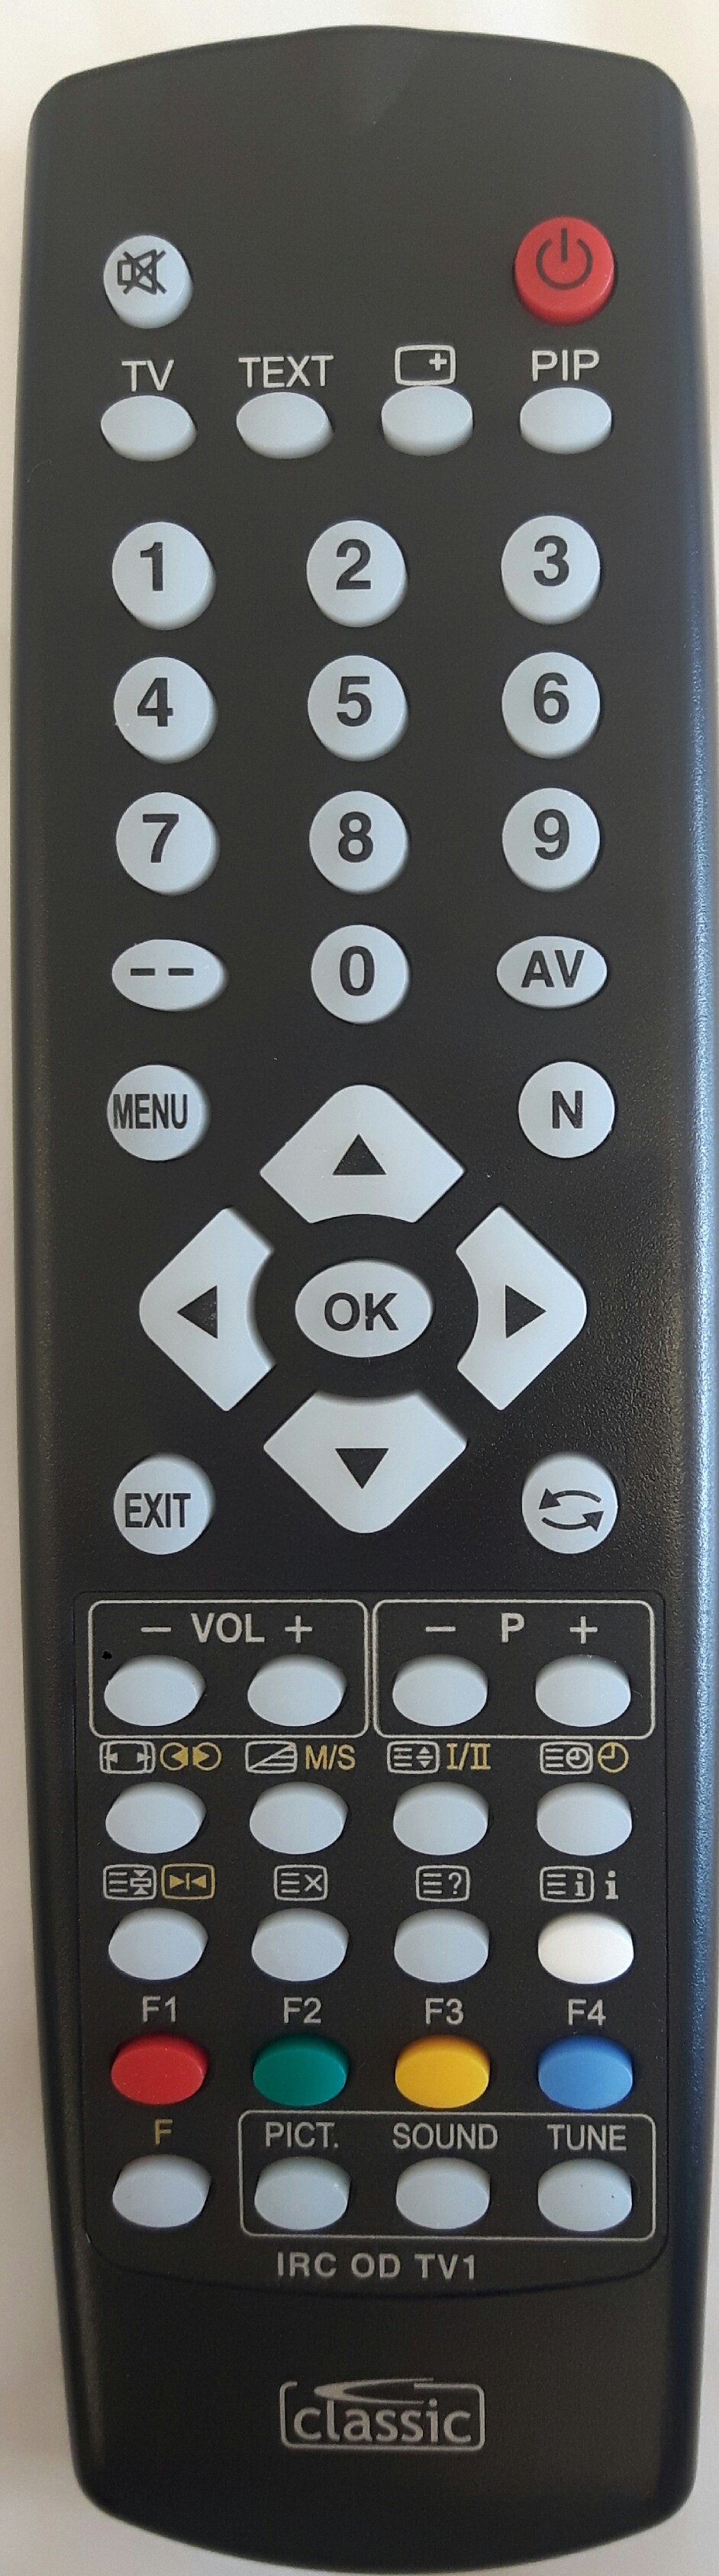 TECHNOSONIC NTV 2843T Remote Control 